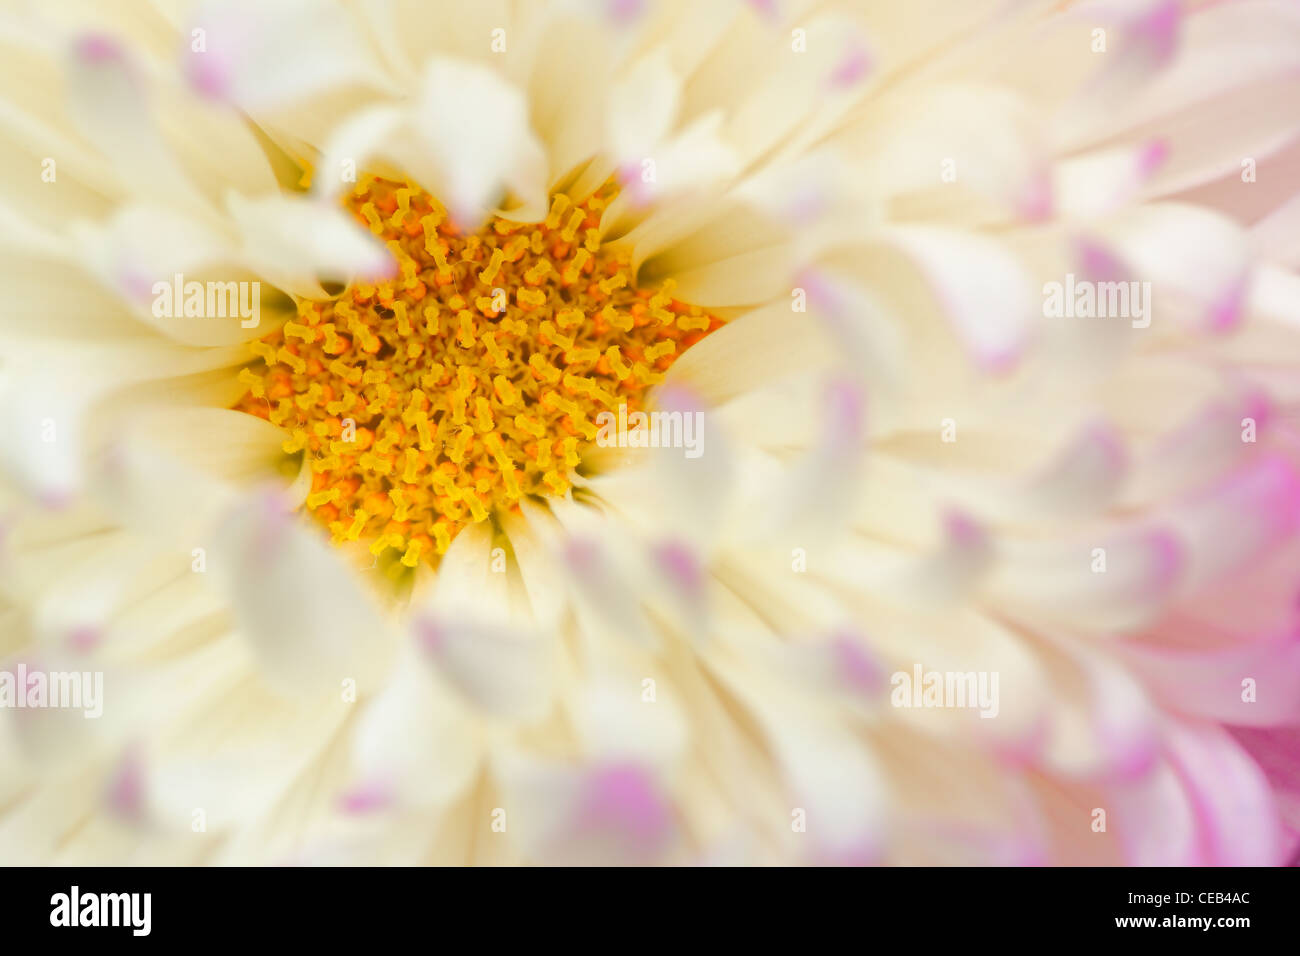 Macro photo of Chrysanthemum flower Stock Photo